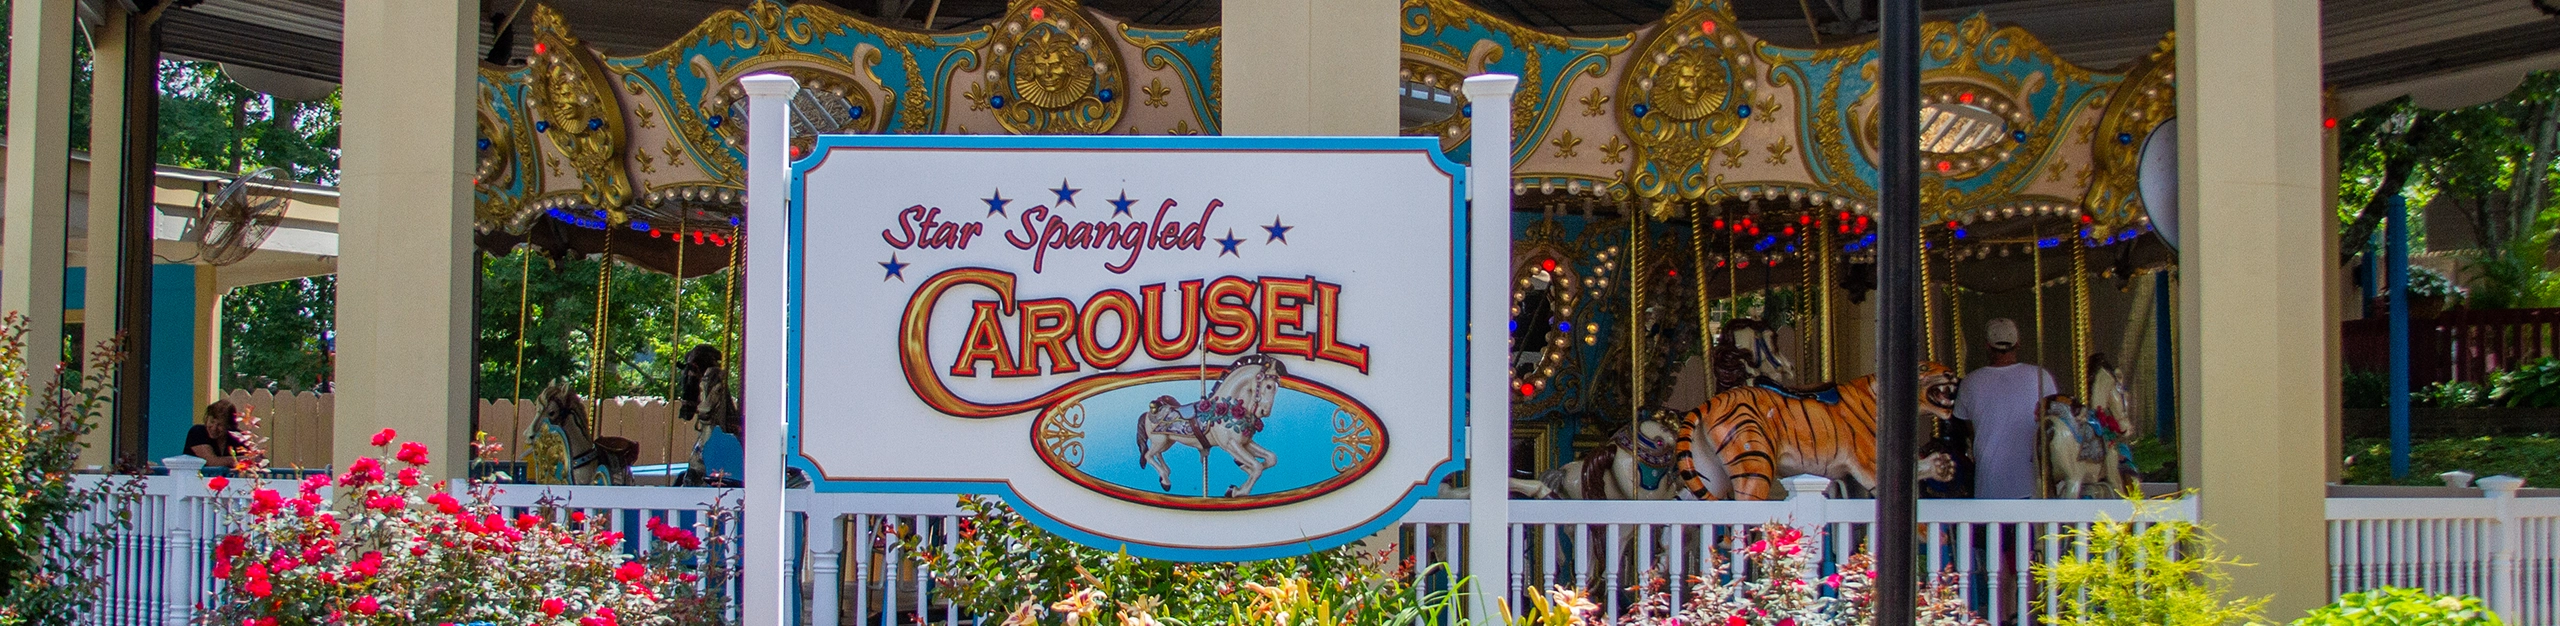 Star Spangled Carousel at Holiday World & Splashin' Safari in Santa Claus, Indiana.